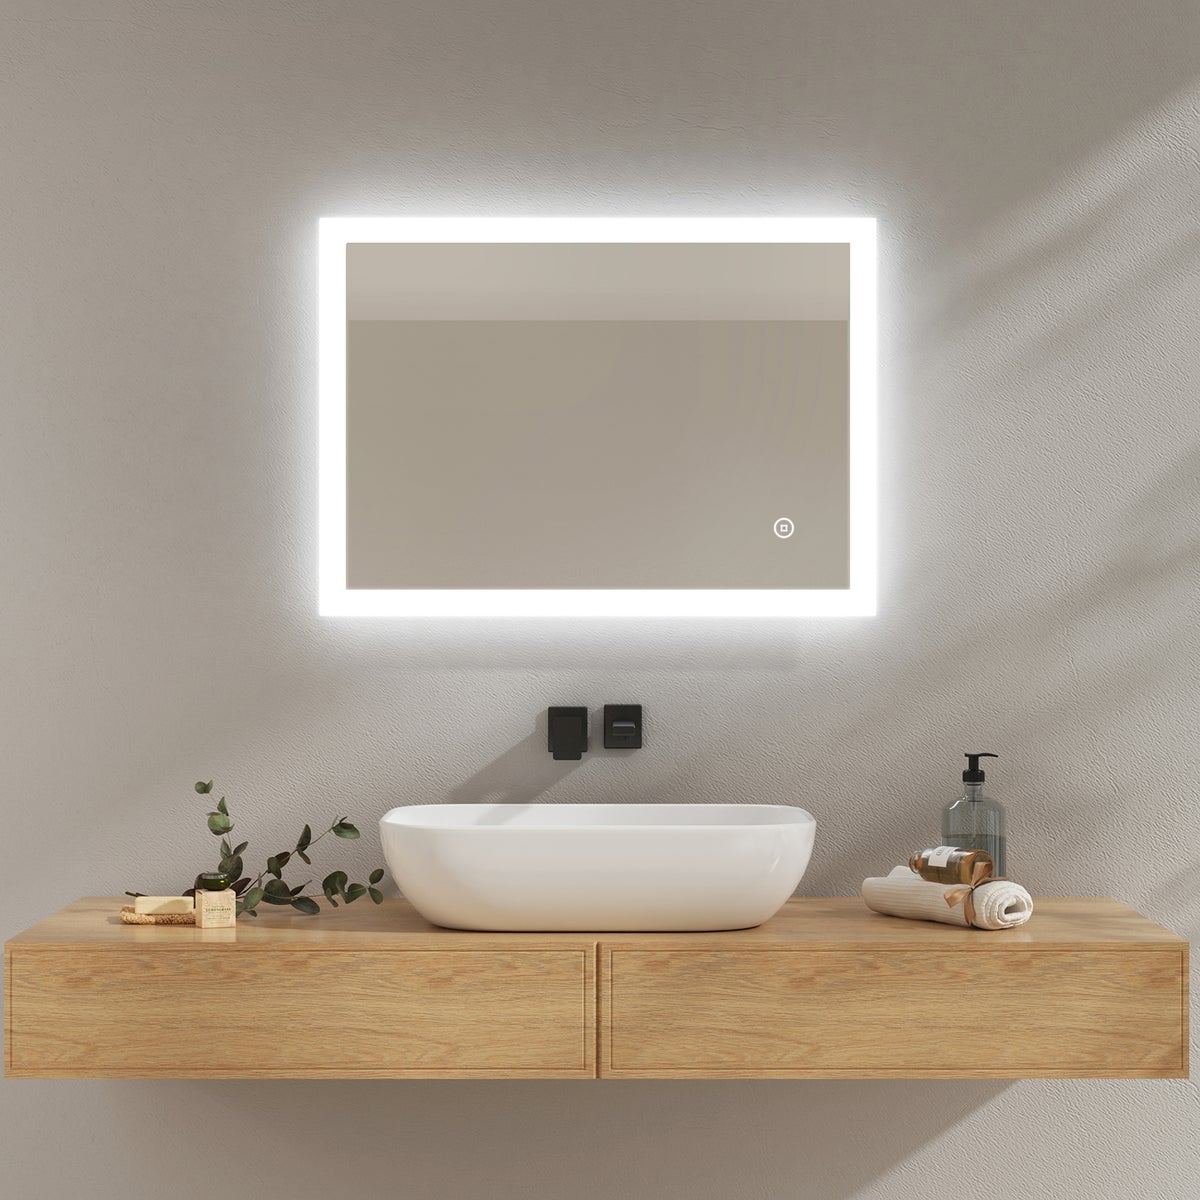 EMKE Badspiegel mit Beleuchtung, 70x50cm, Kaltweißes Licht